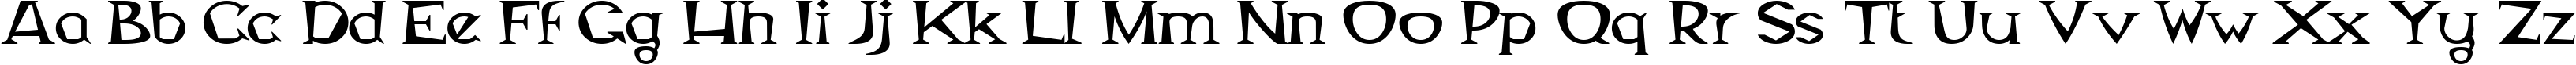 Пример написания английского алфавита шрифтом Magyar Serif